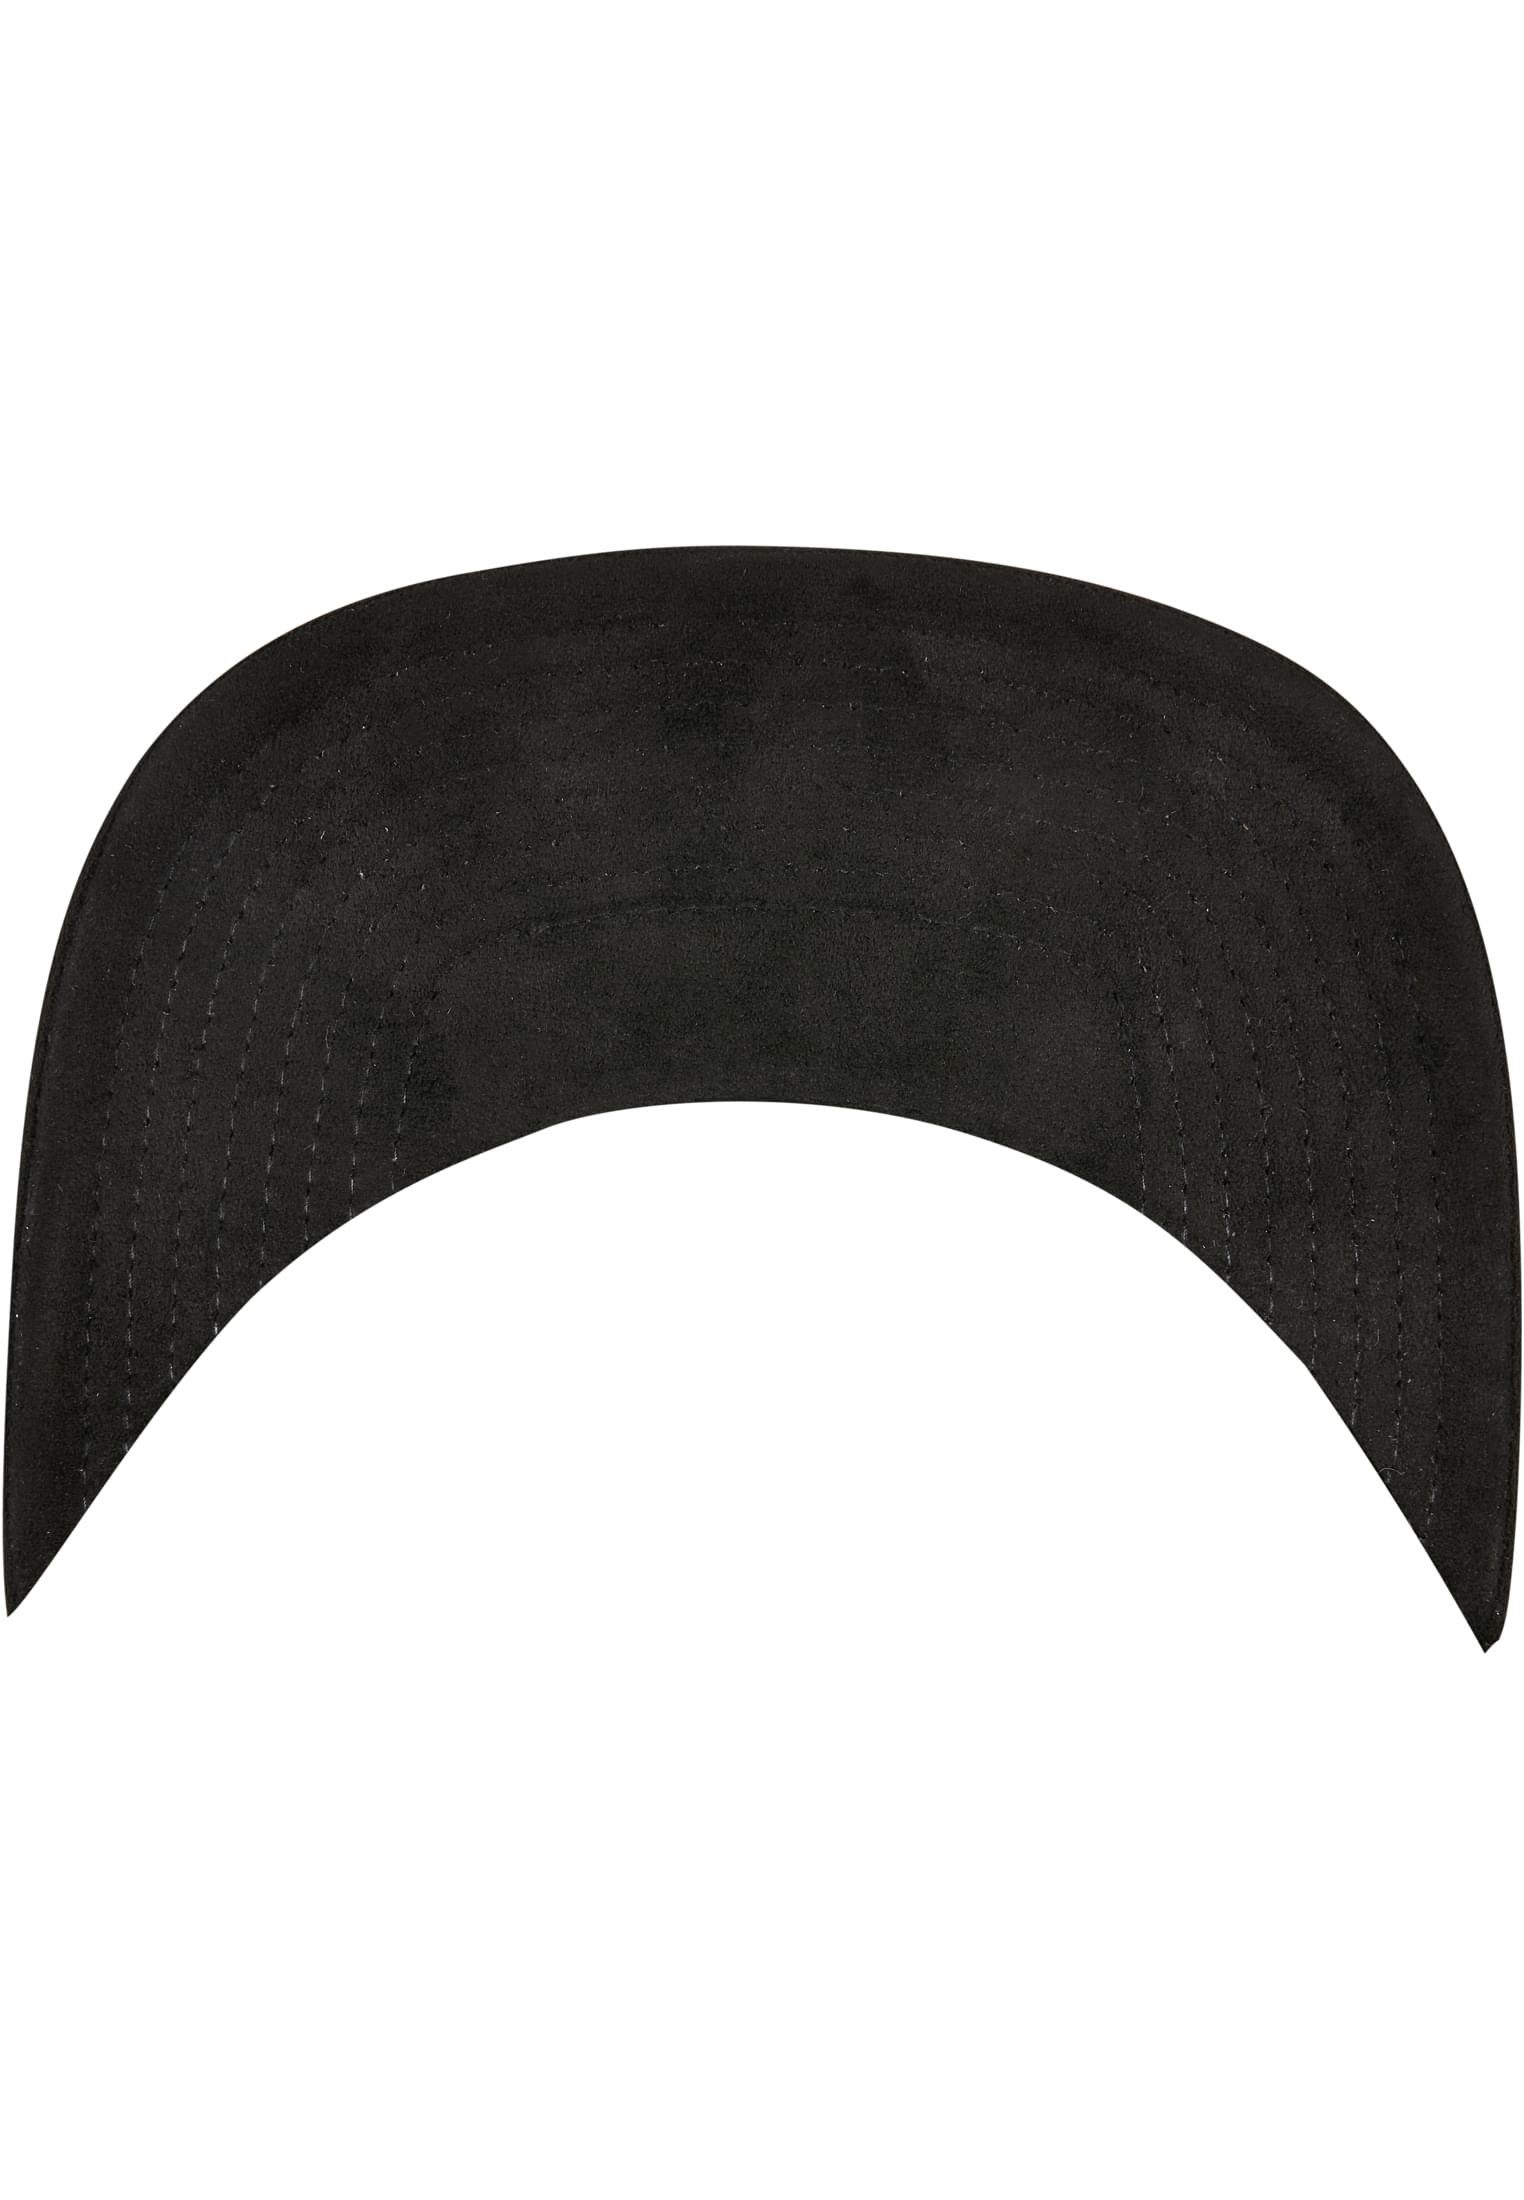 Accessoires Flex Flexfit Suede Snapback black Leather Cap